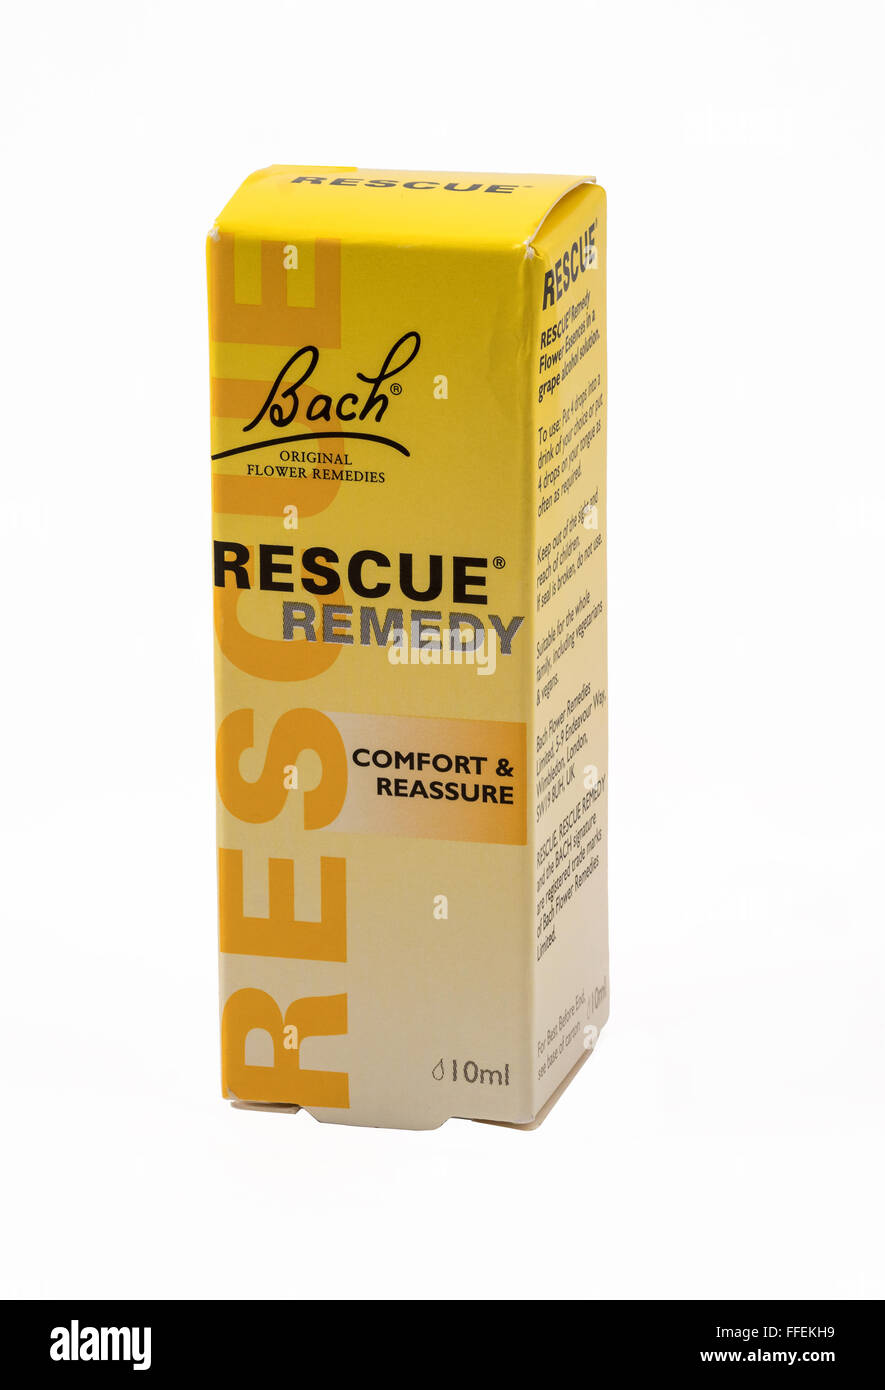 Bach Rescue Remedy, utilizado como tratamiento para el estrés, la tensión, etc. Foto de stock